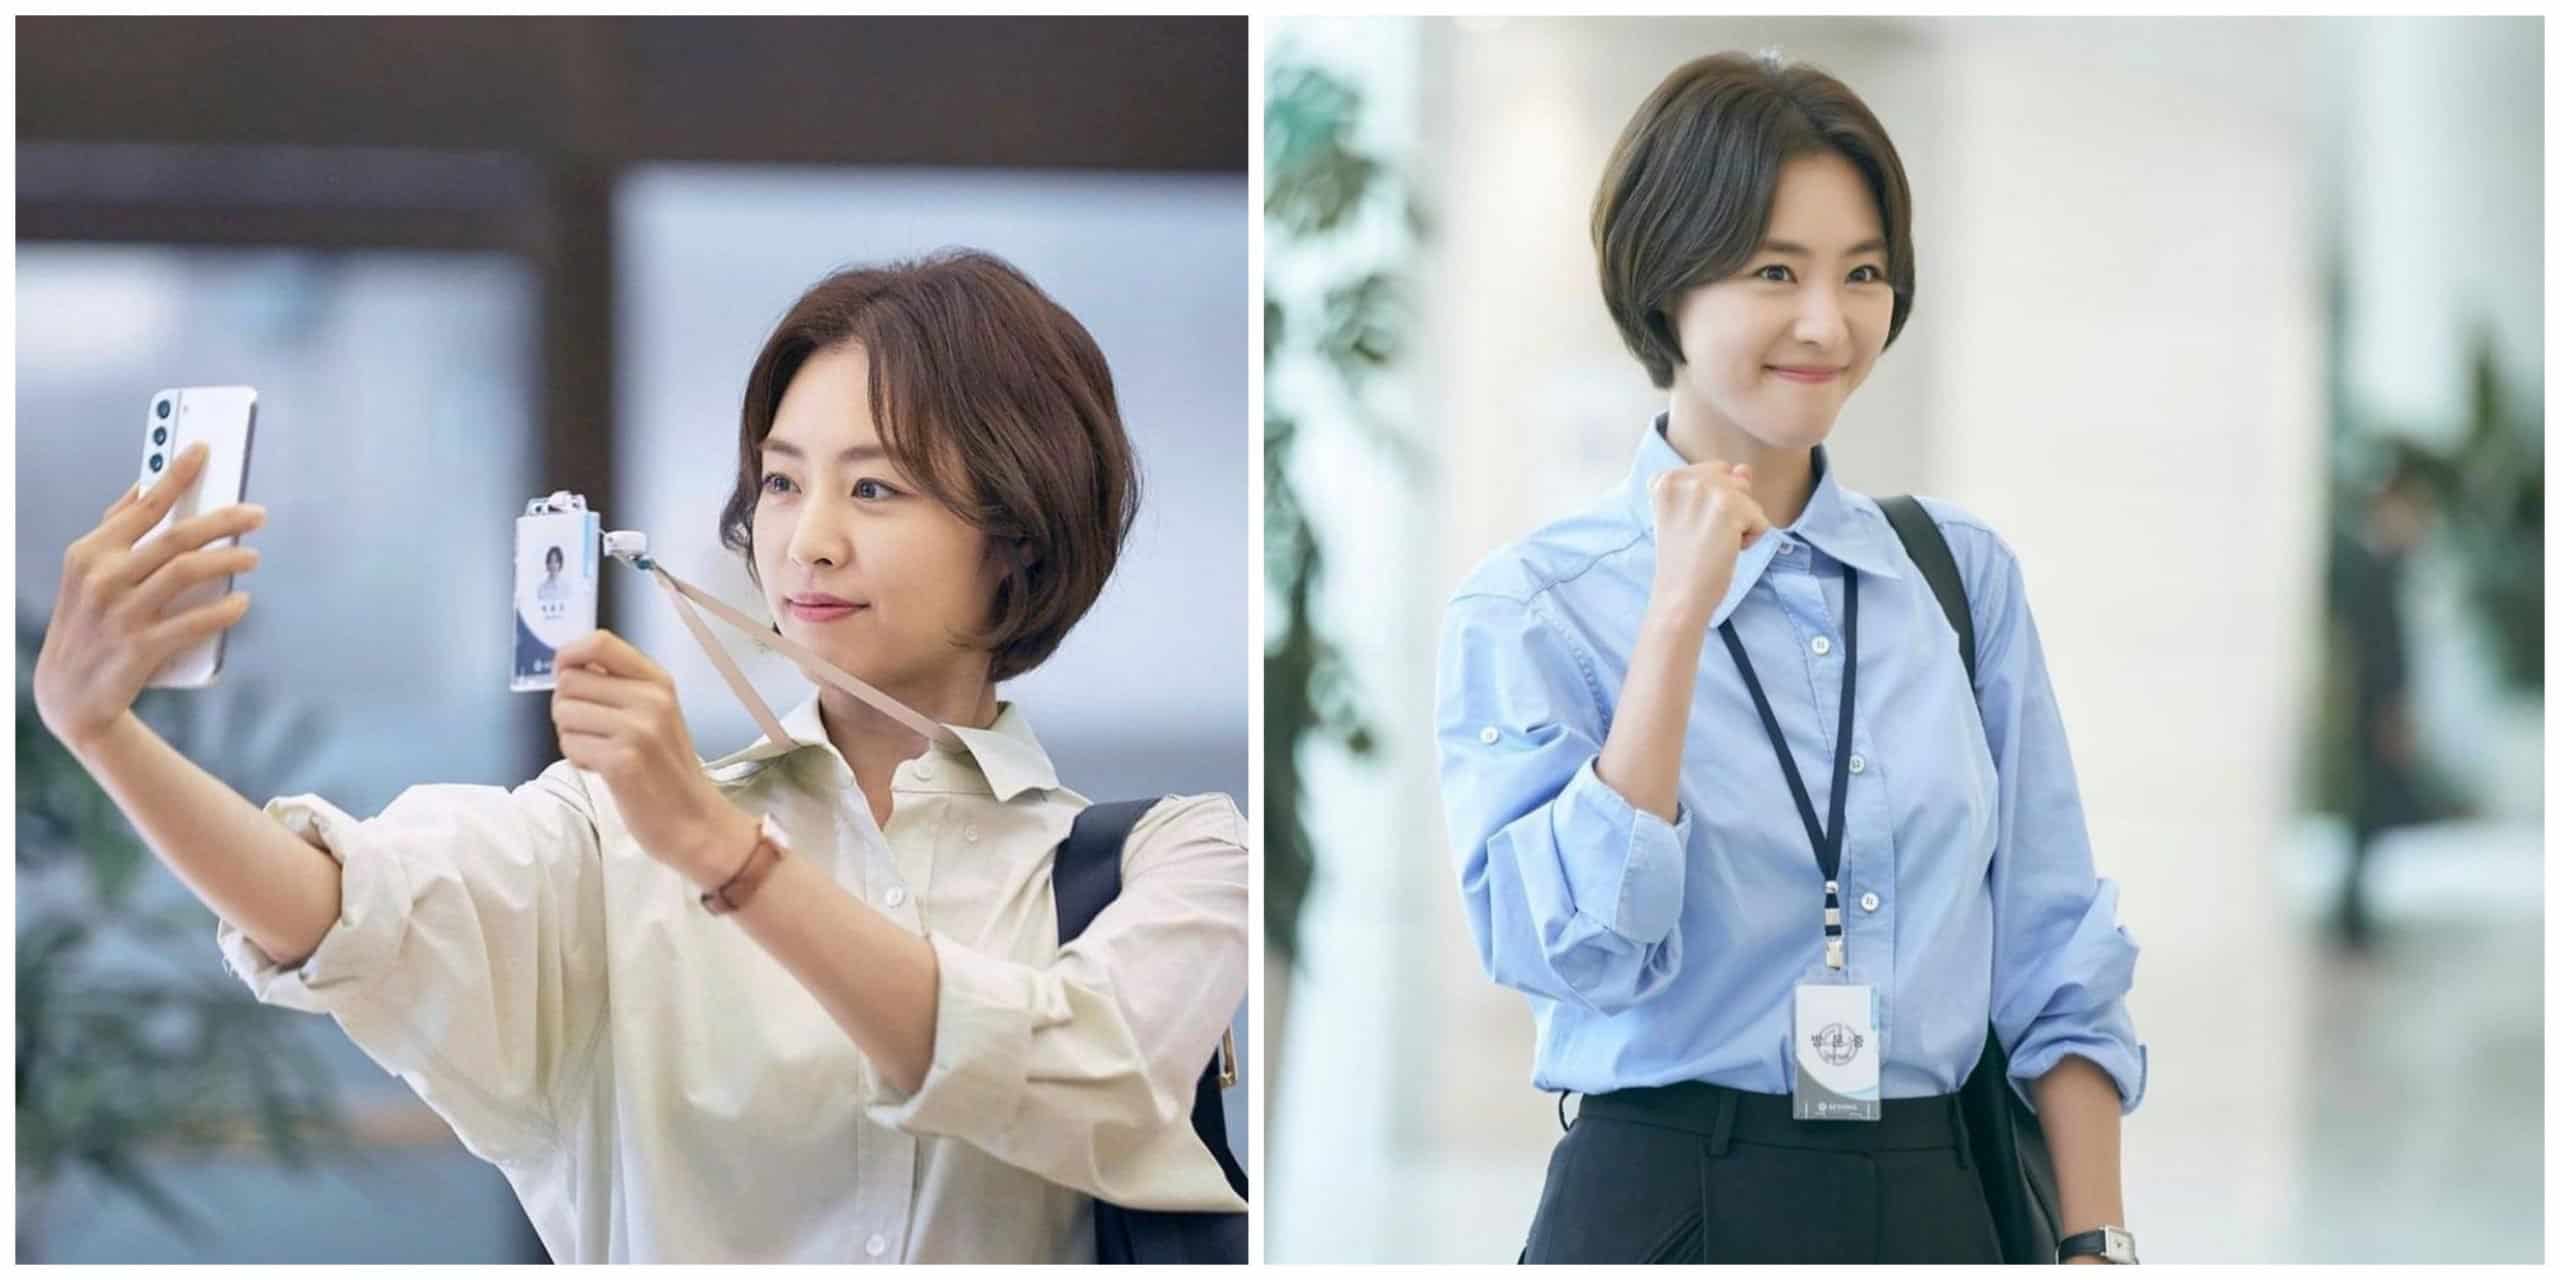 Lee Yun Hee as Park Yoon Ju